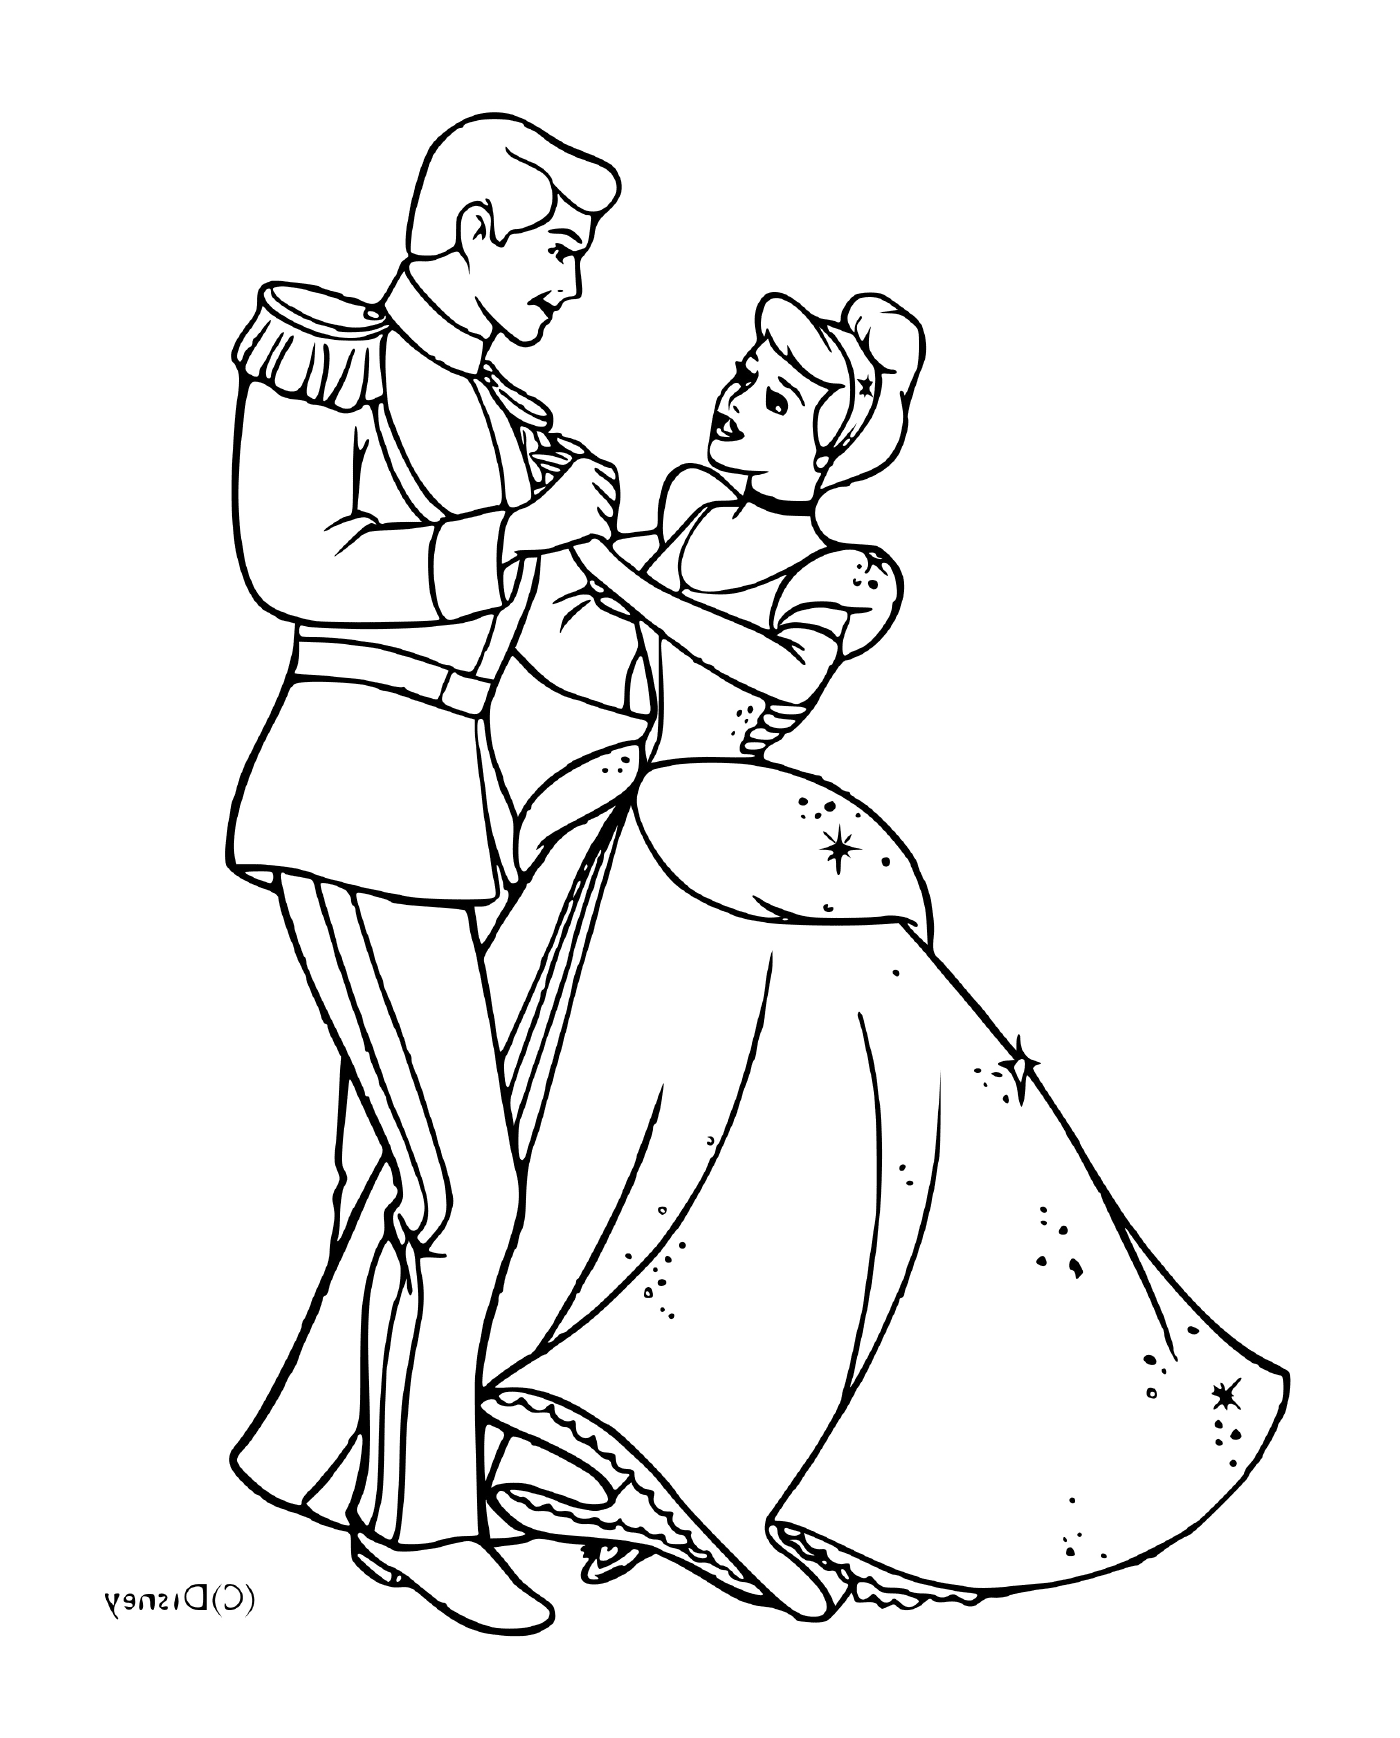  Cinderela e seu príncipe encantado dançando juntos 